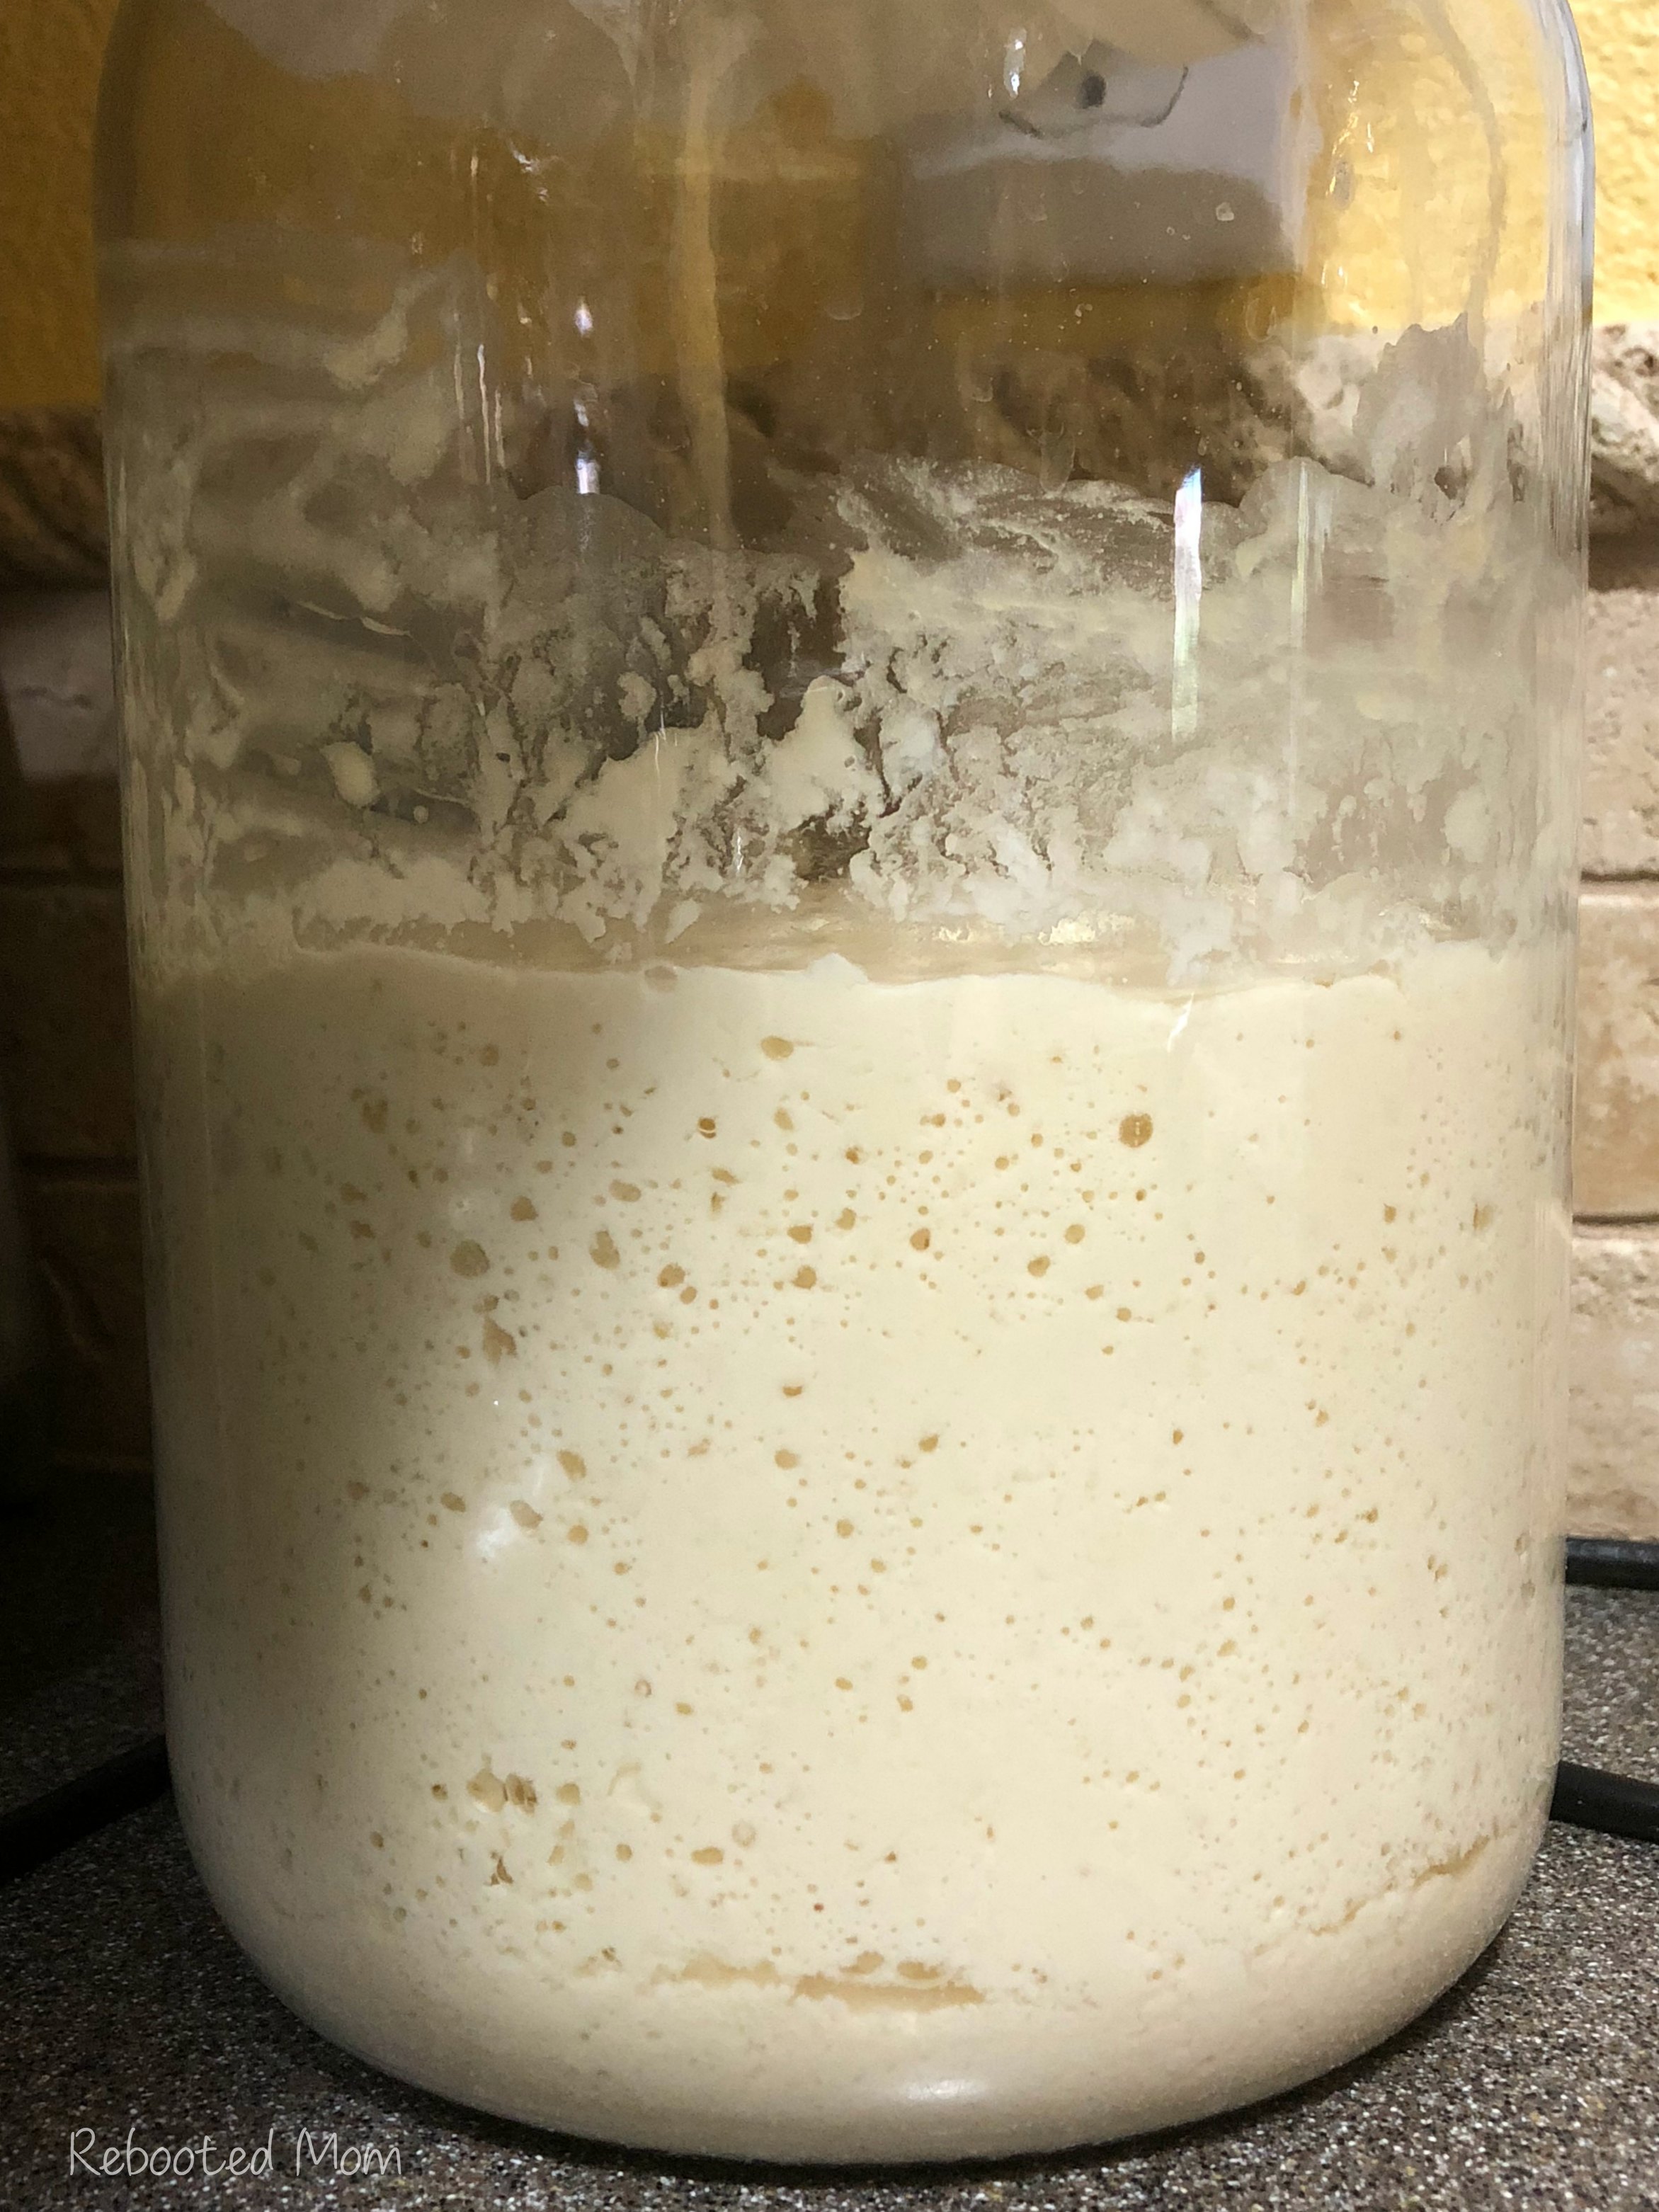 Gallon jar of kefir sourdough starter that